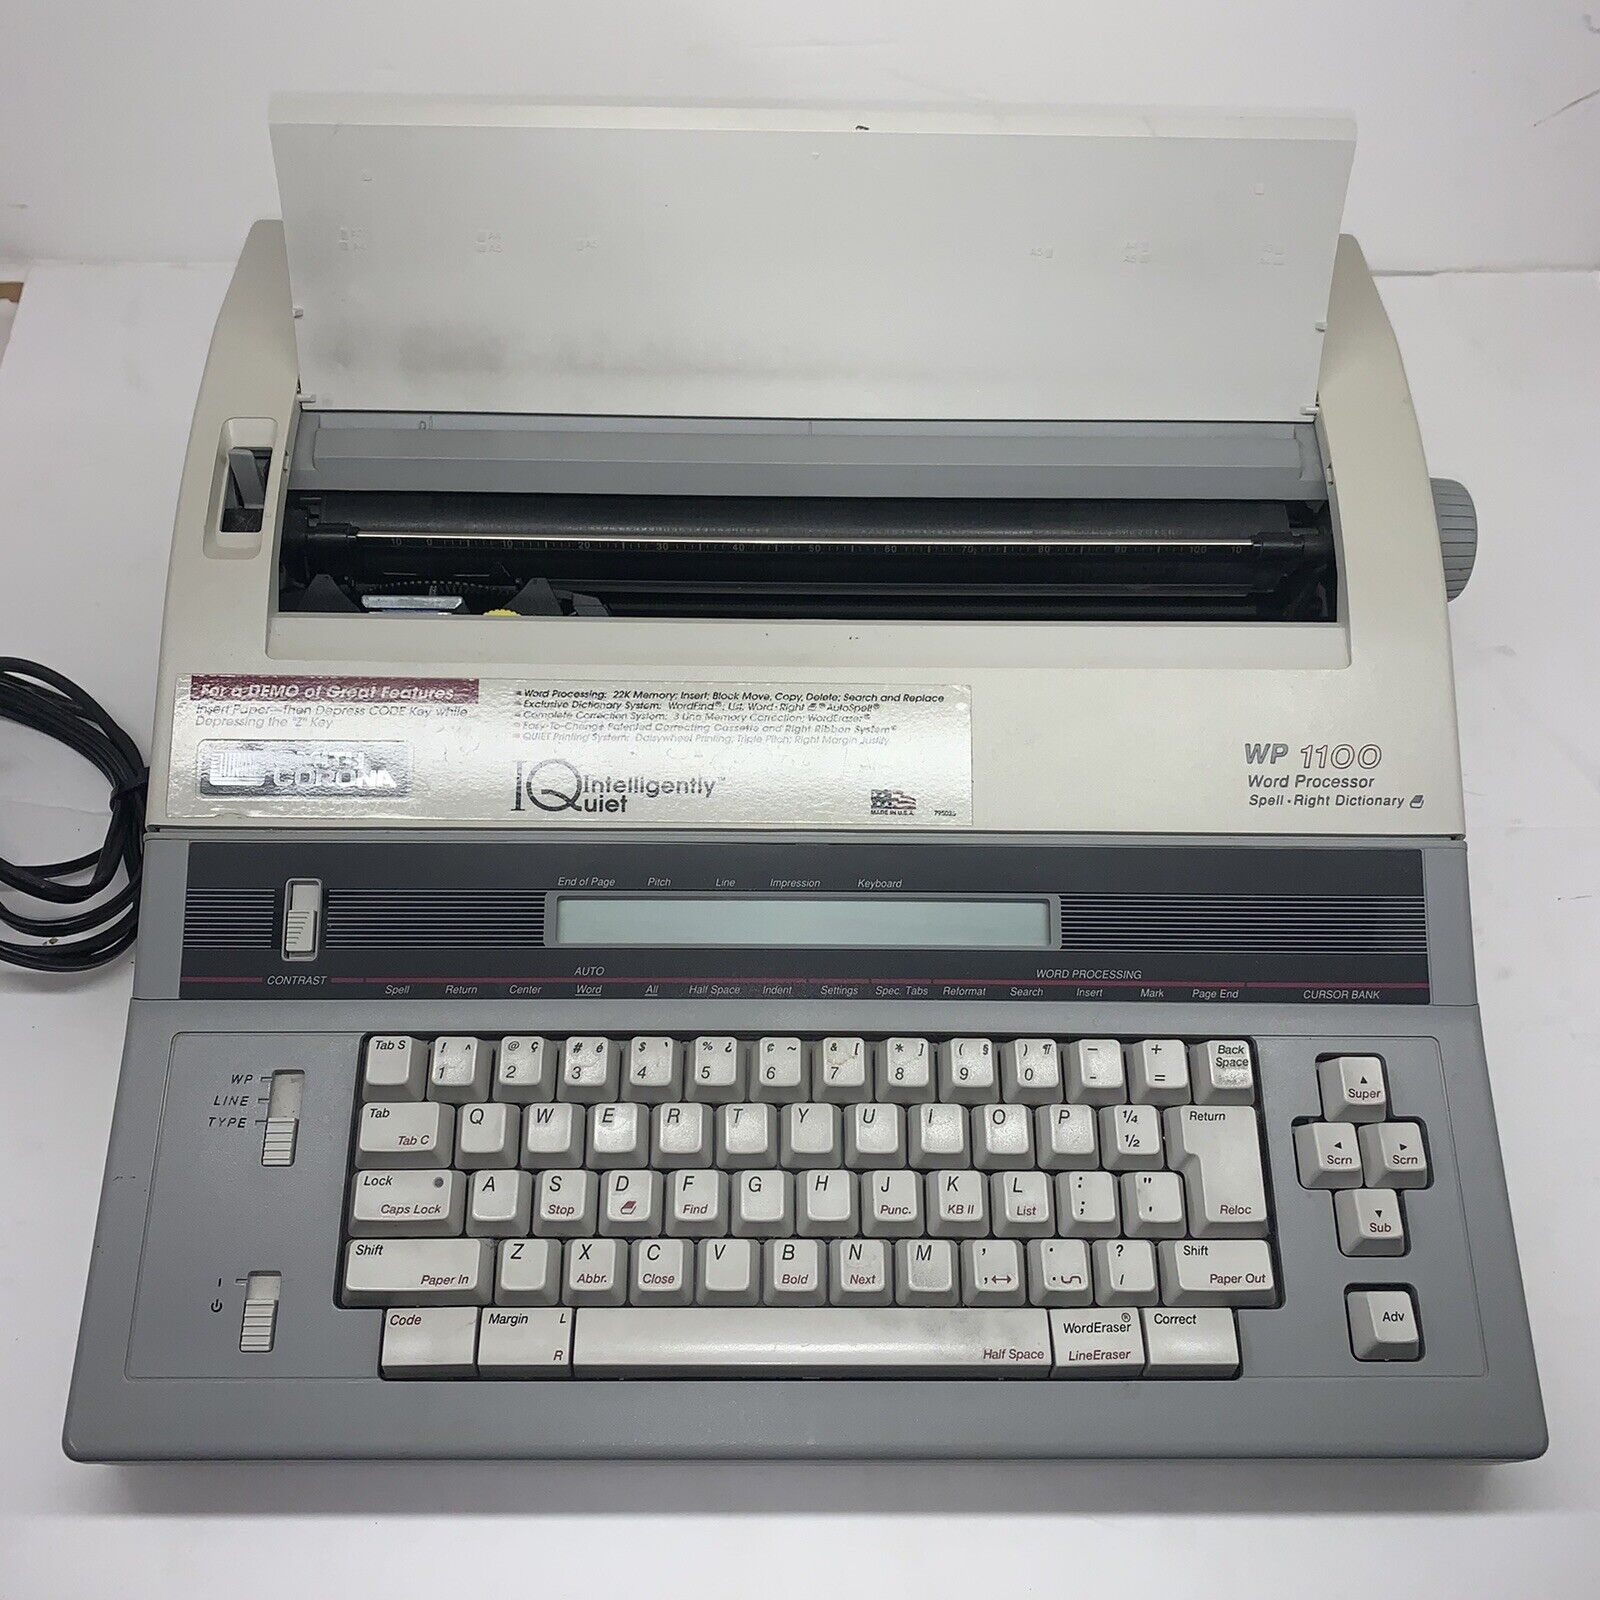 Smith Corona Electronic Typewriter WP 1100 Vintage